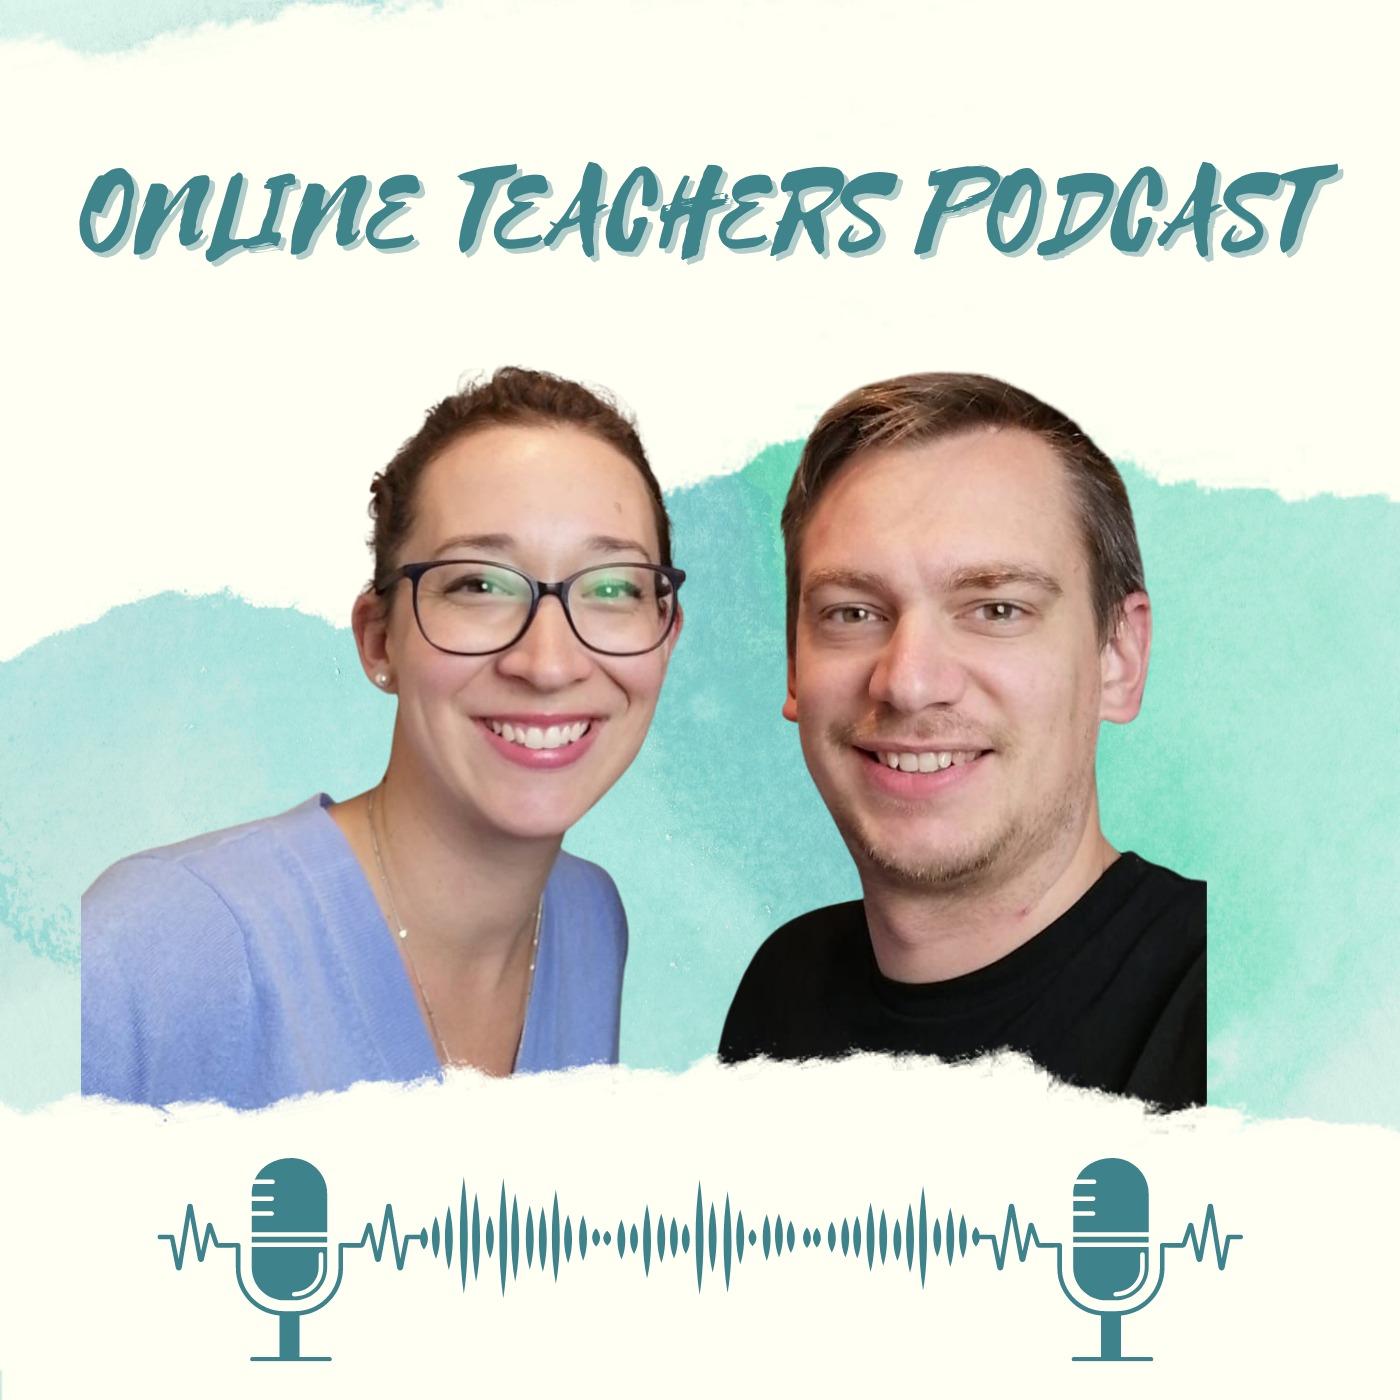 Online Teacher Podcast (OTP)